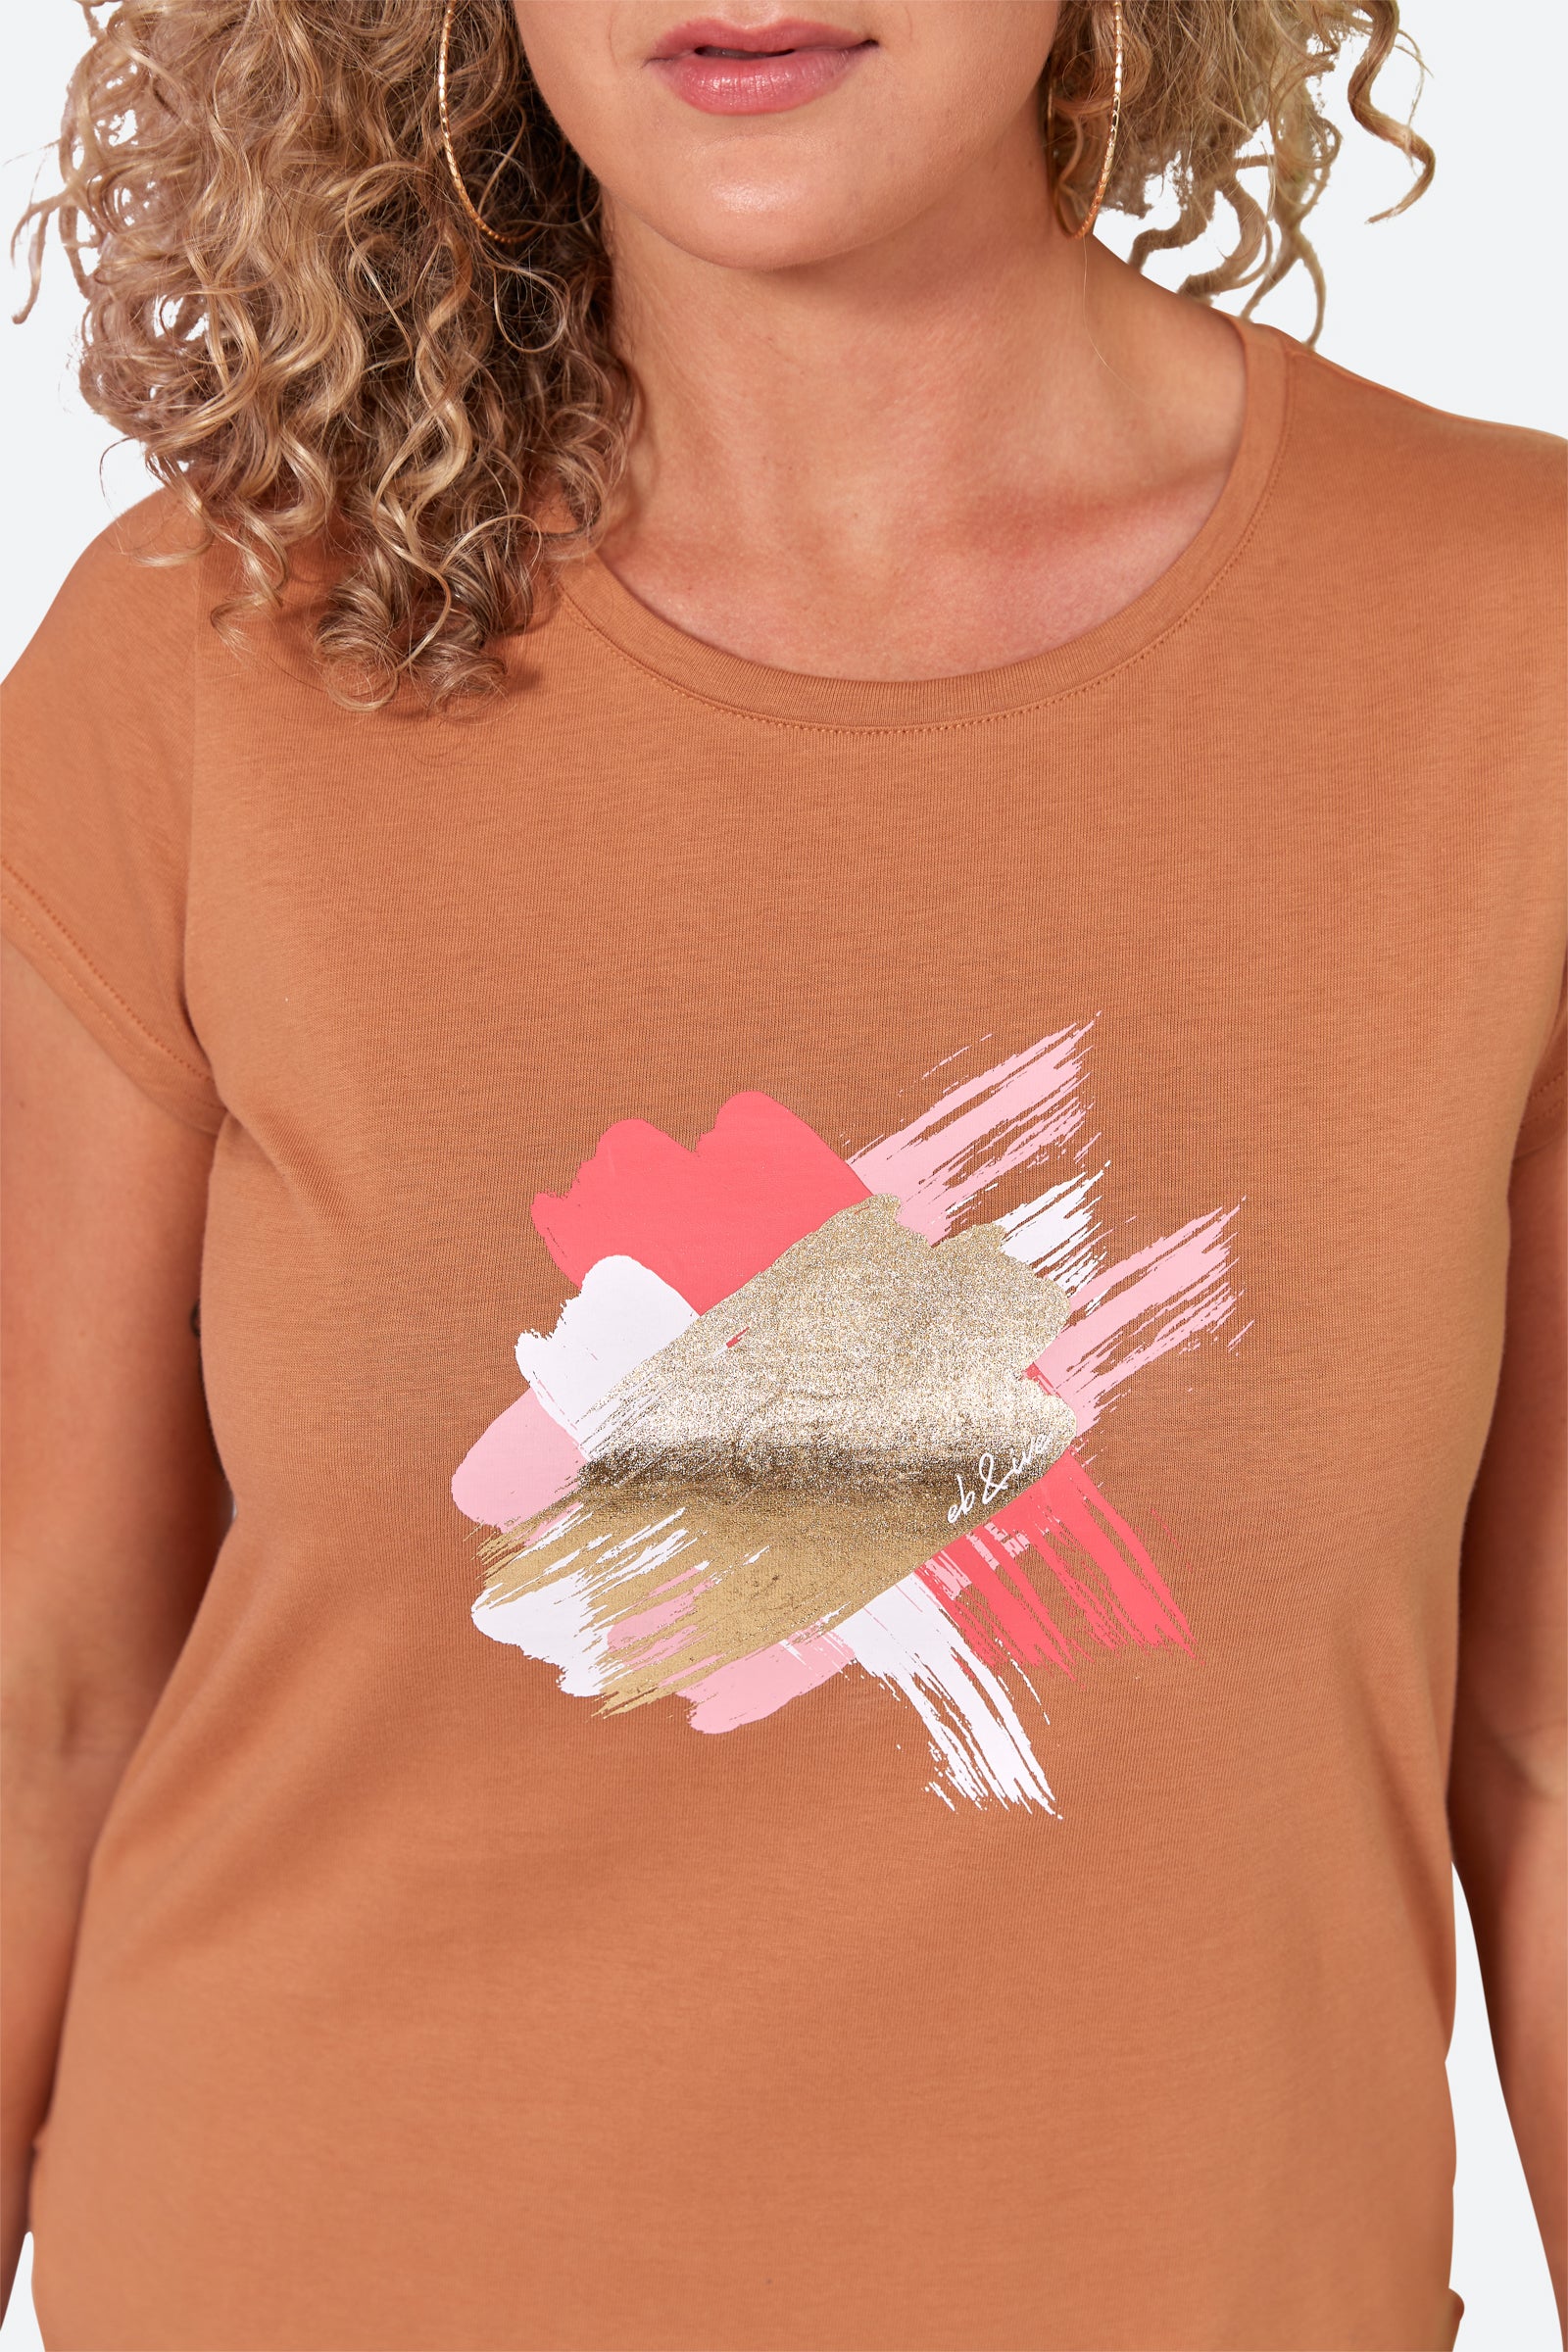 Reveler Tshirt - Caramel - eb&ive Clothing - Top Tshirt S/S